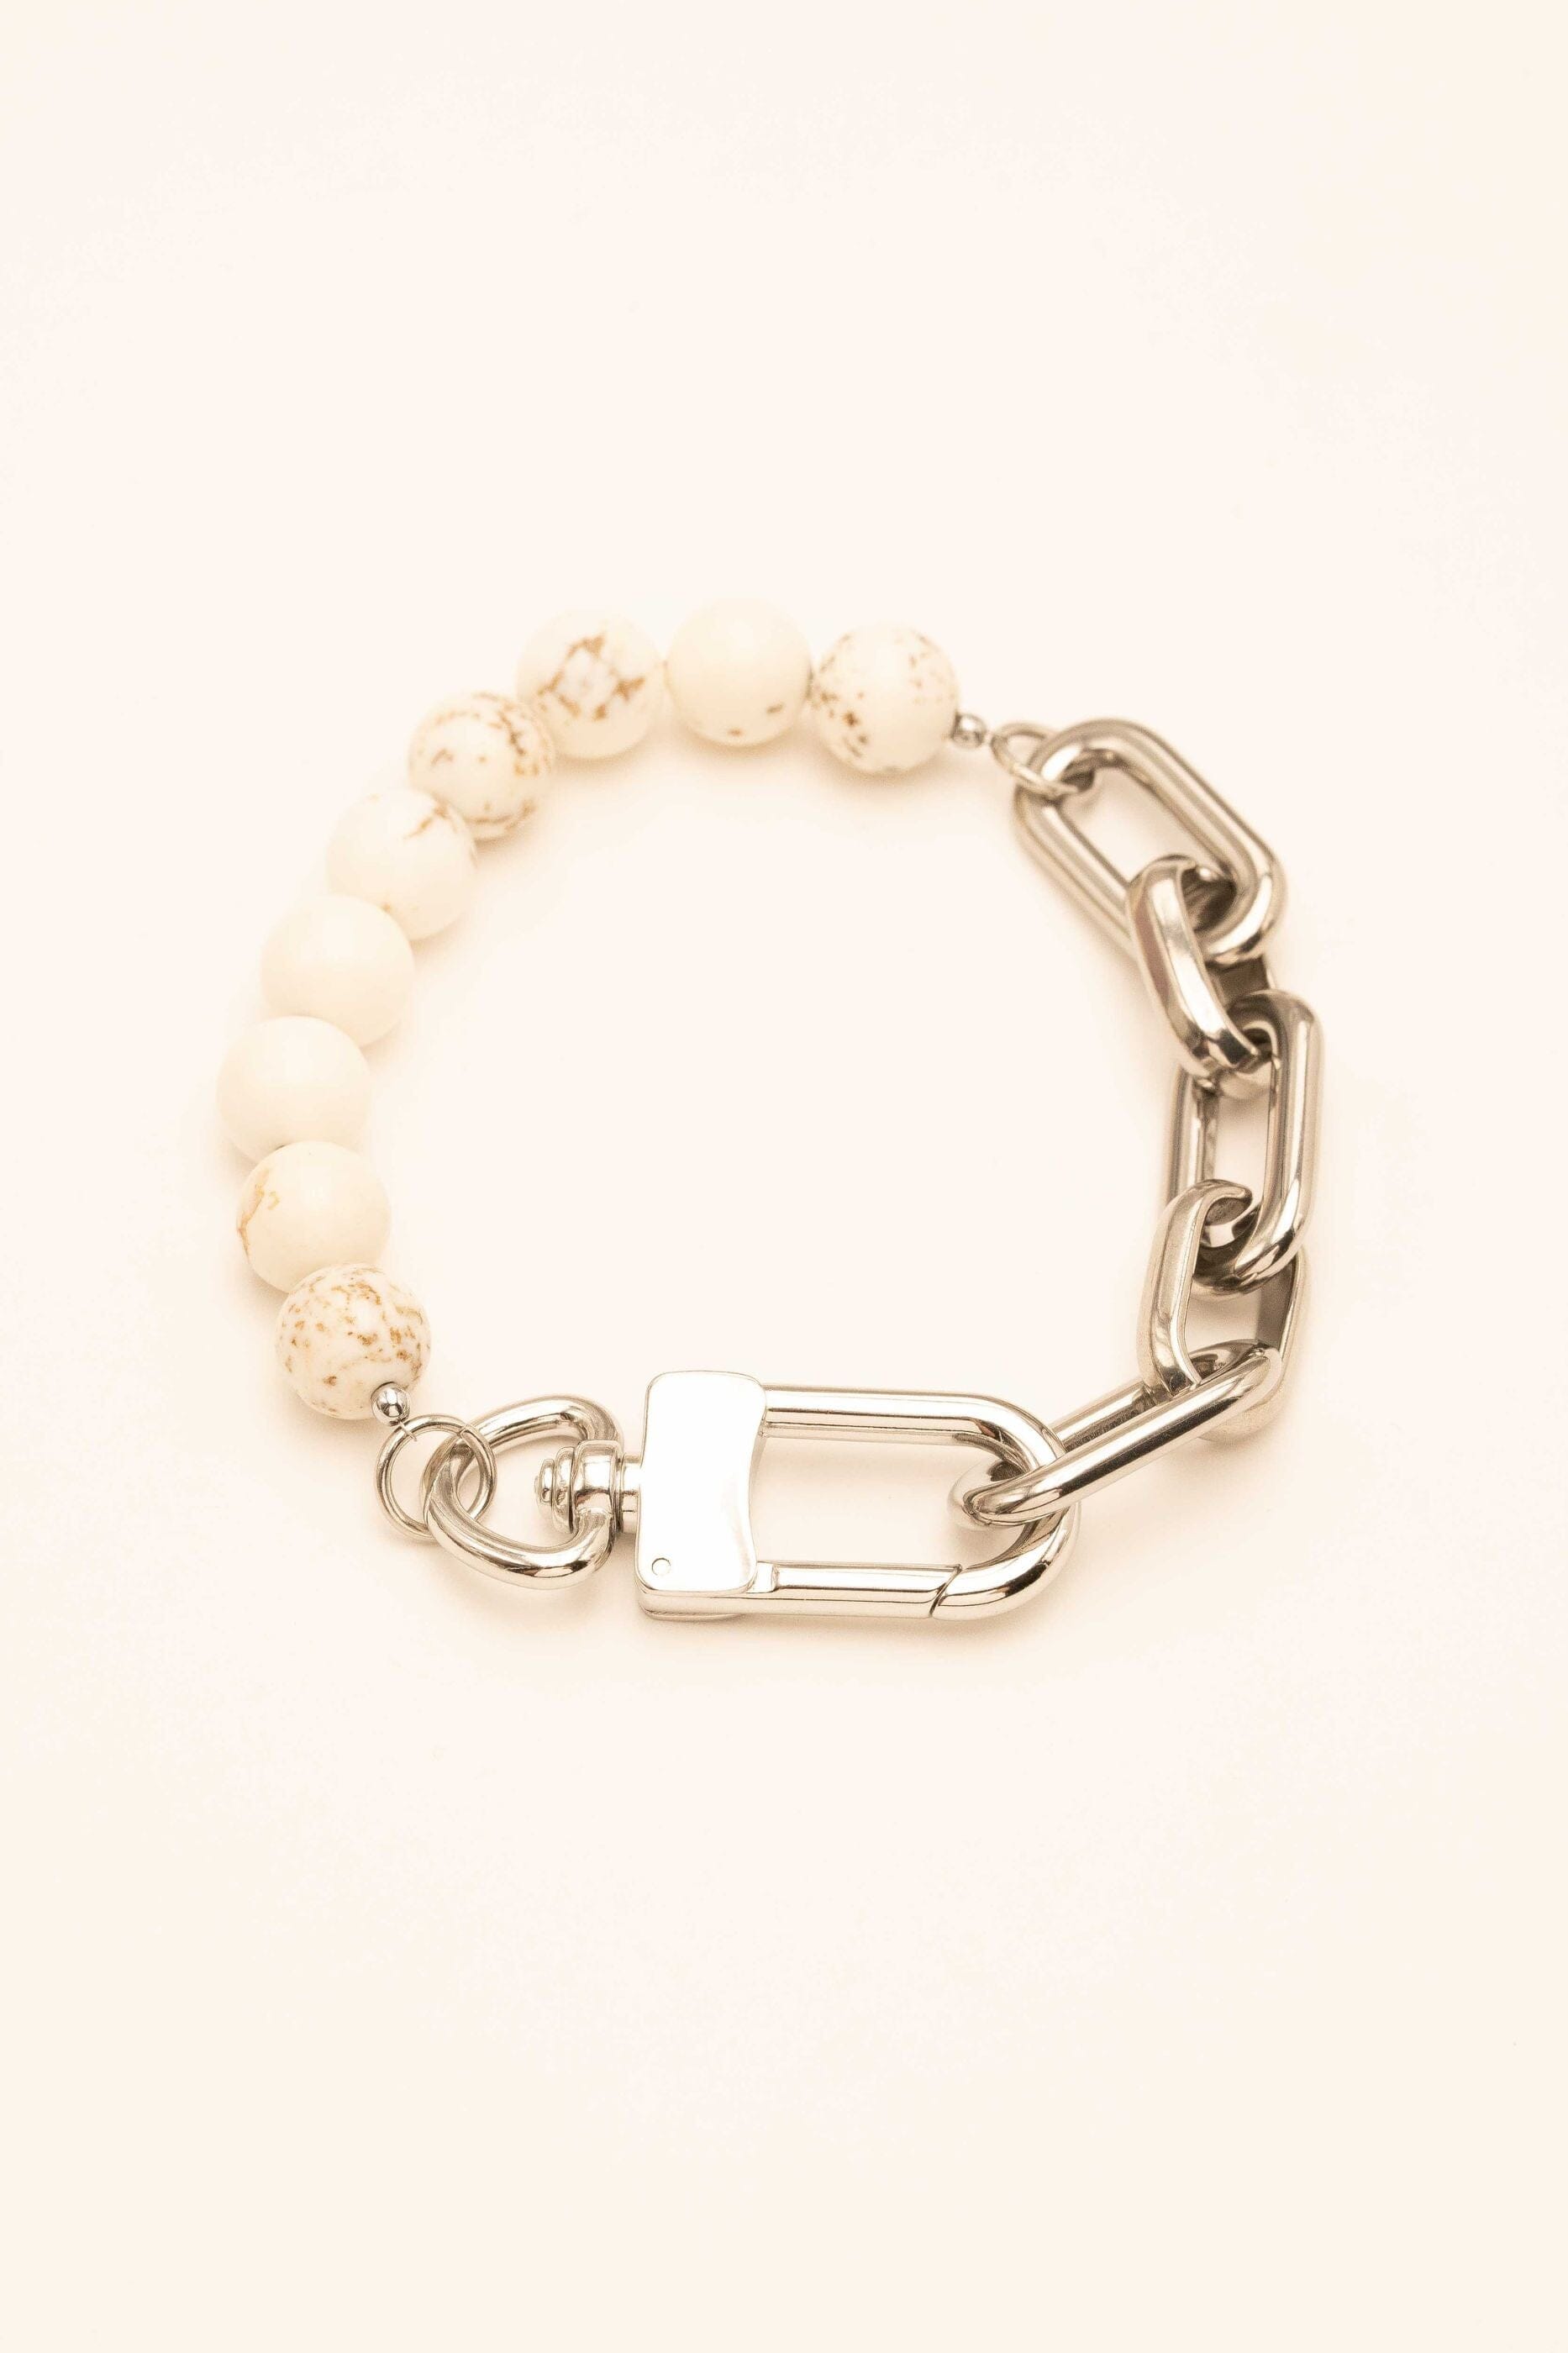 Bracelet Bohm Paris - Kelly bracelet Bohm Paris ARGENTÉ HOWLITE BLANCHE 